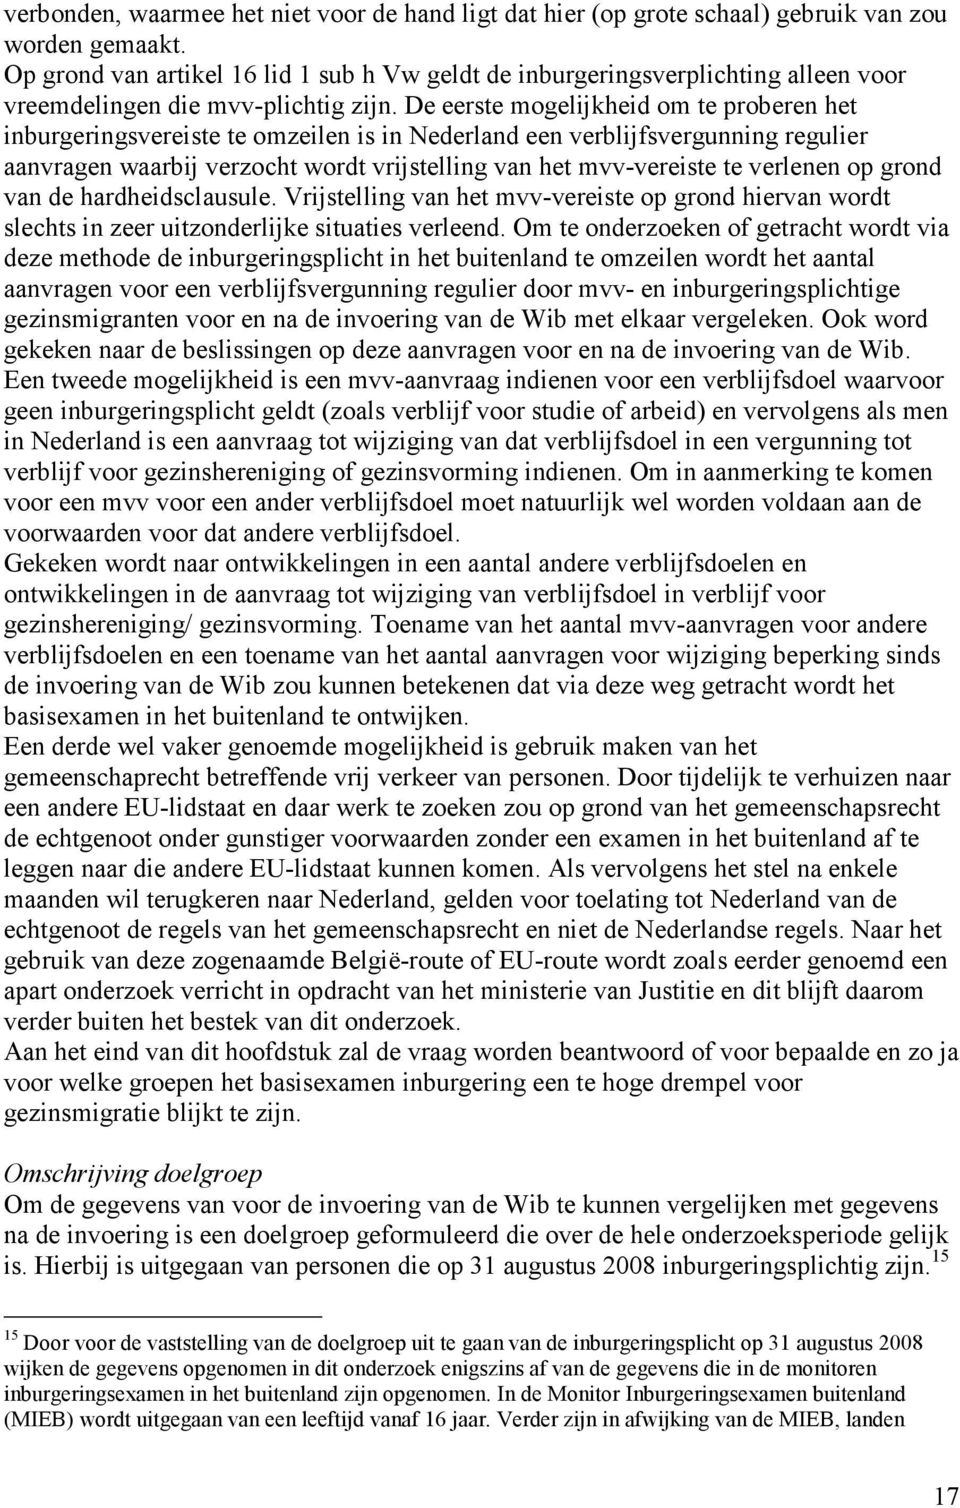 De eerste mogelijkheid om te proberen het inburgeringsvereiste te omzeilen is in Nederland een verblijfsvergunning regulier aanvragen waarbij verzocht wordt vrijstelling van het mvv-vereiste te